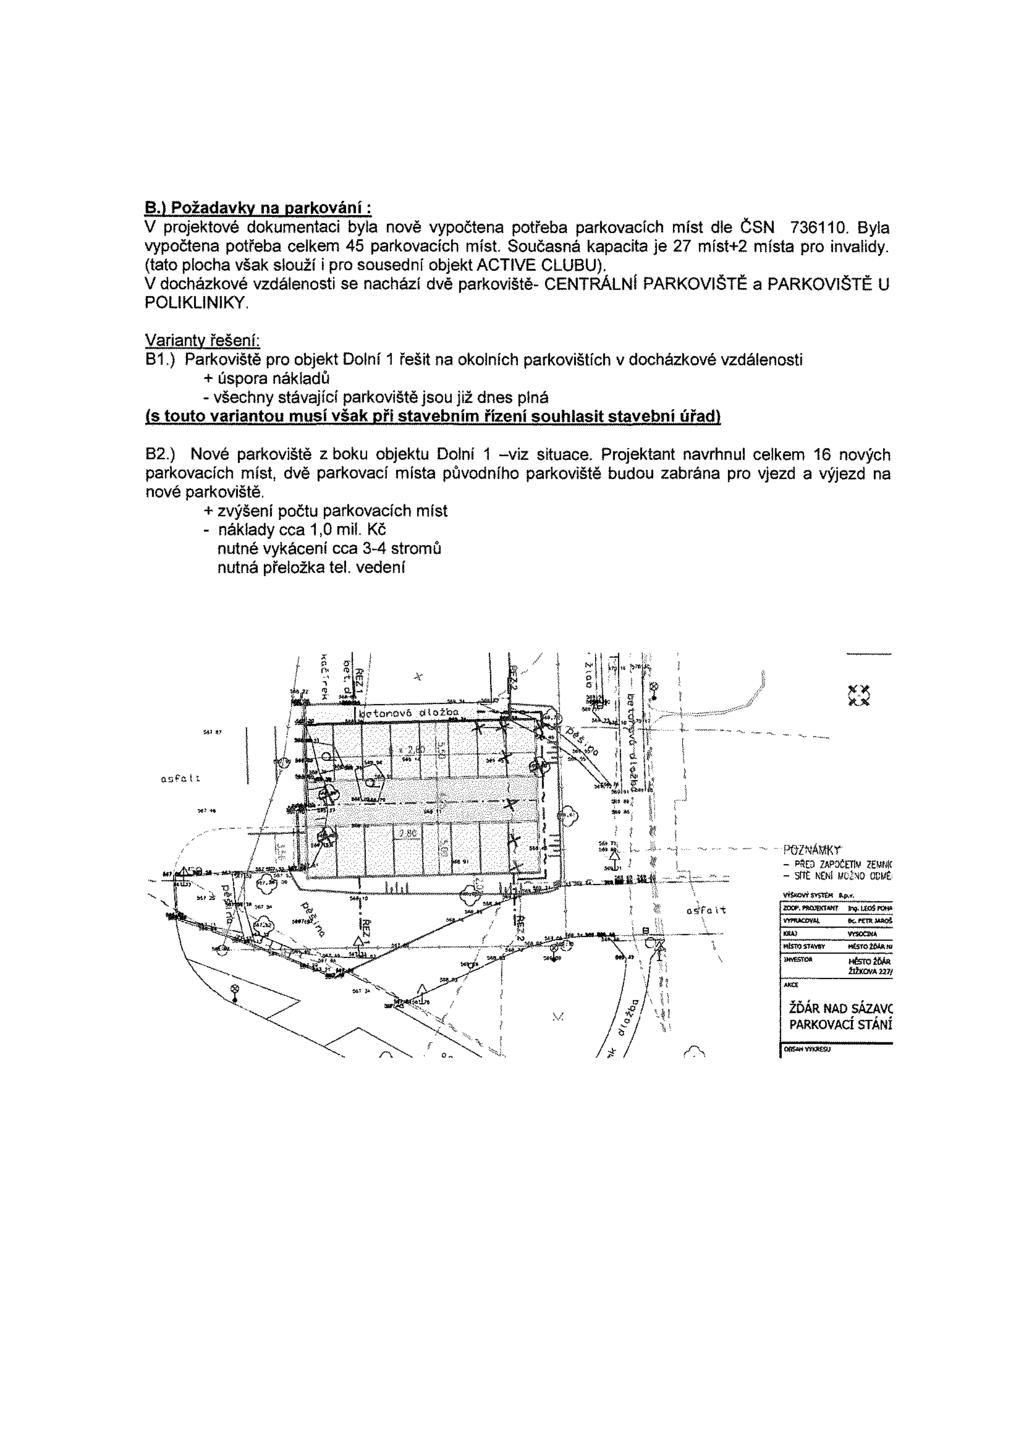 8.) Požadavky na parkování : V projektové dokumentaci byla nově vypočtena potřeba parkovacích míst dle ČSN 73611 O.